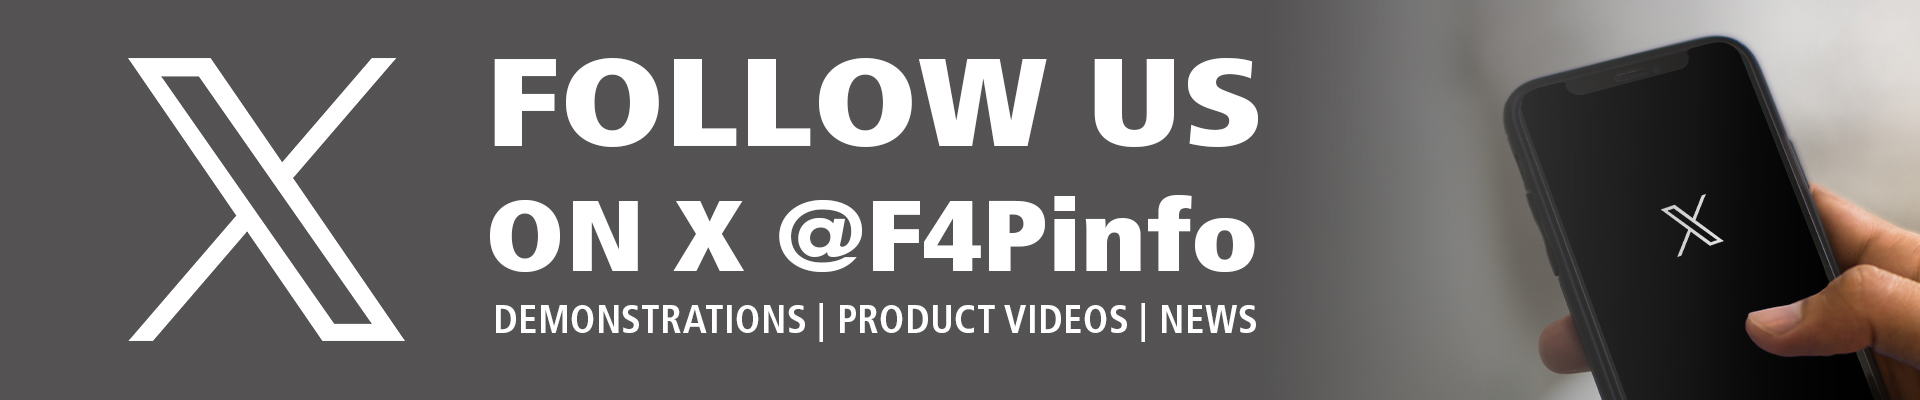 Follow us on x f4pinfo web 